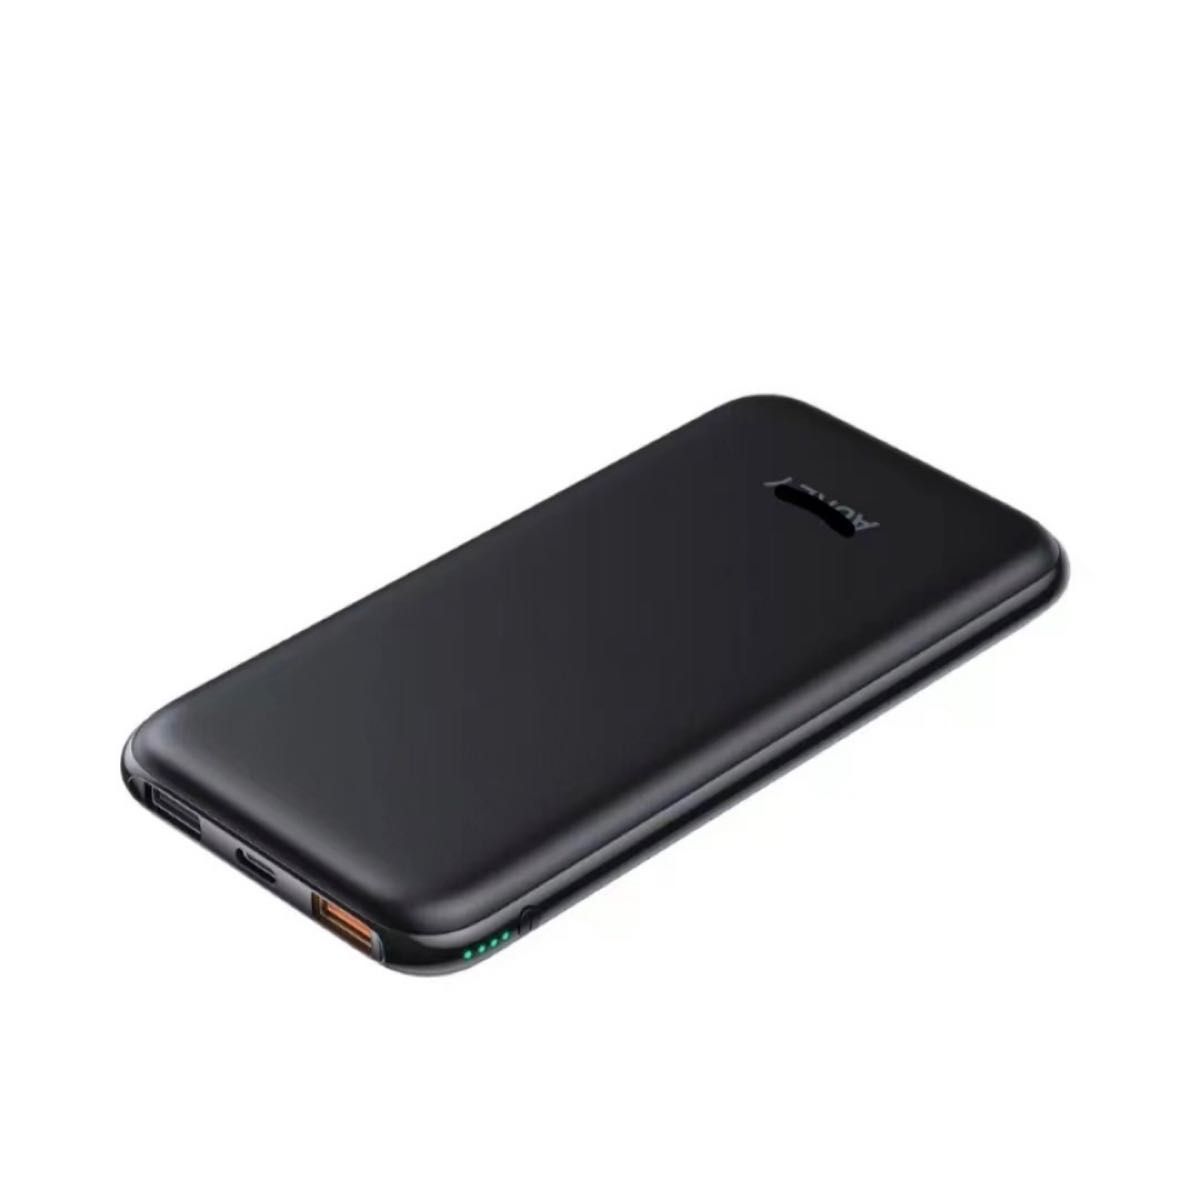 モバイルバッテリー 携帯充電器 ブラック 黒 iPhone スマホ Android iPad タブレット USBC アウトドア